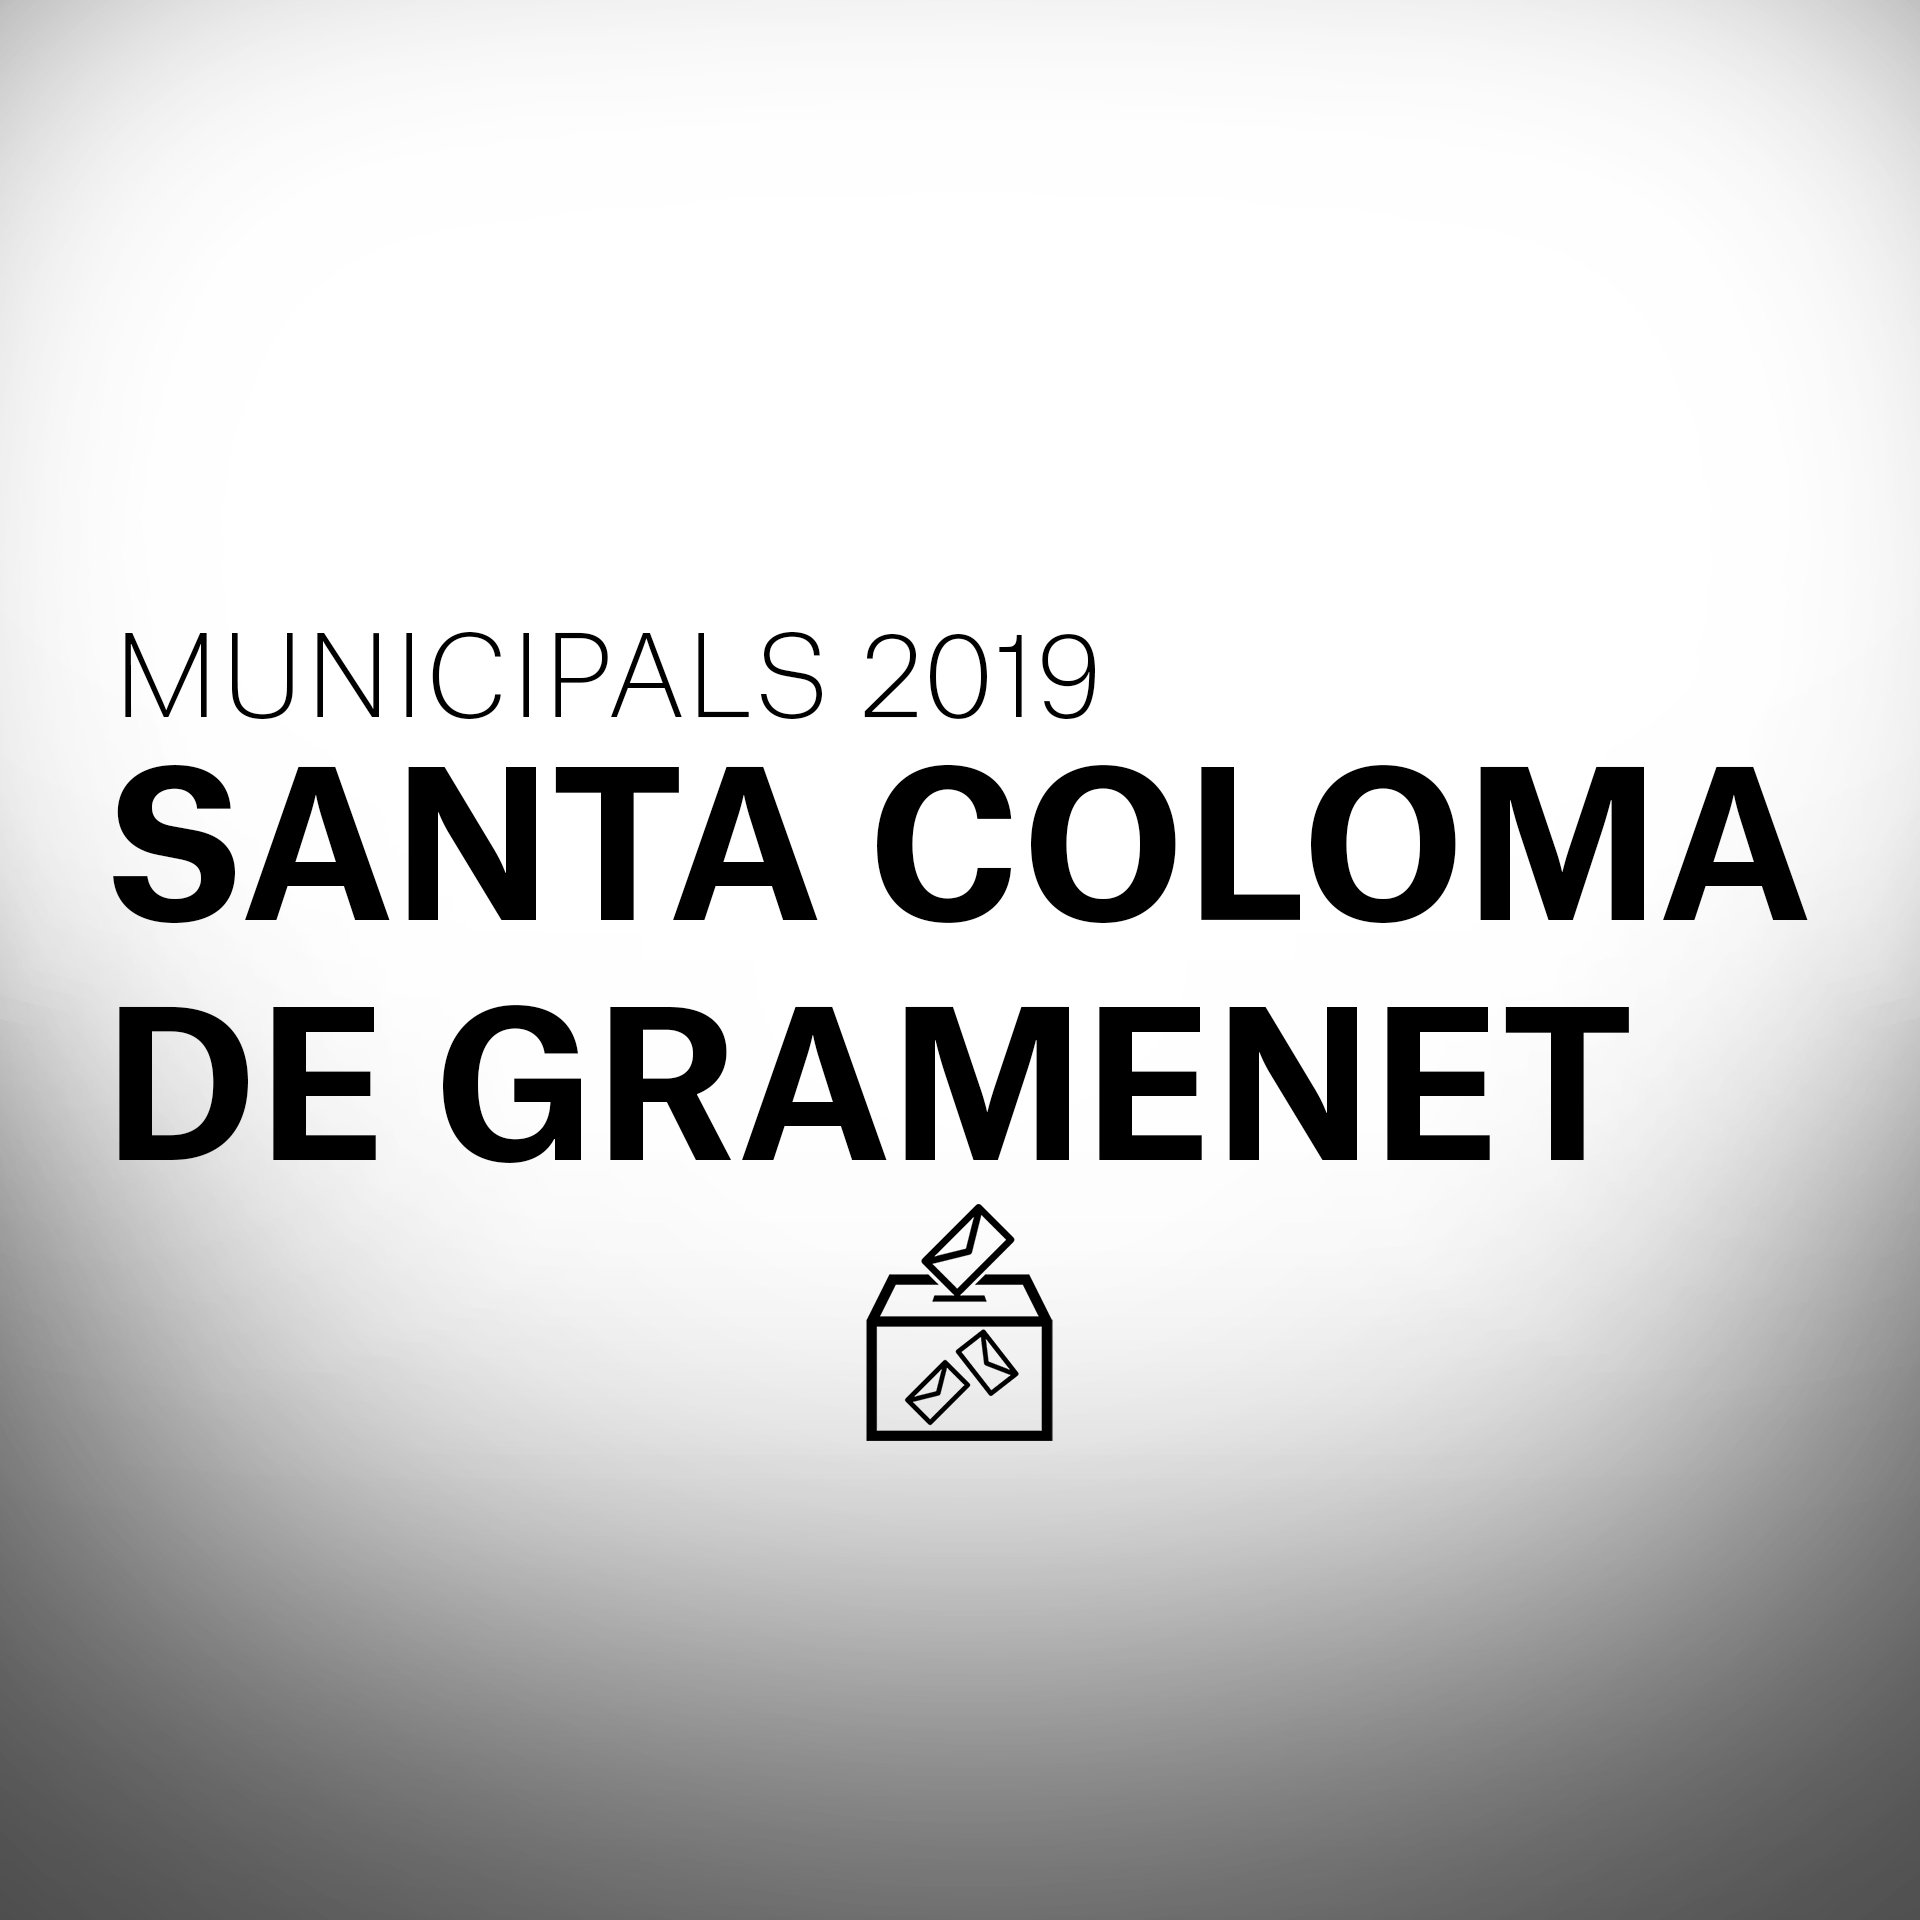 Què passarà a les eleccions municipals a Santa Coloma de Gramenet?